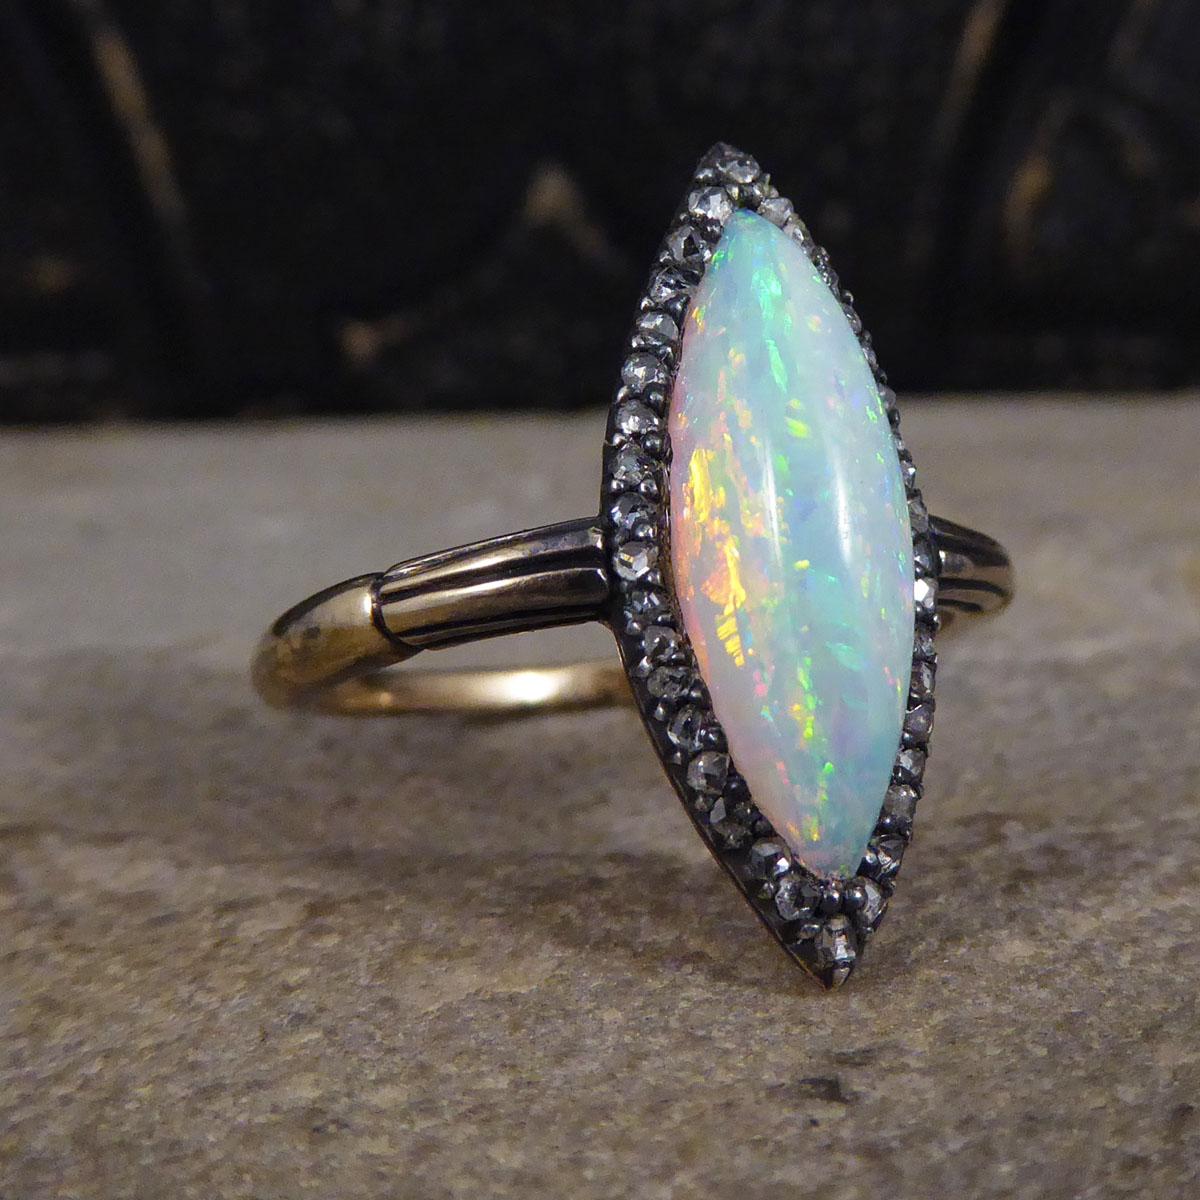 Ein exquisiter und ungewöhnlicher Ring für die Edwardianische Ära. In der Mitte dieses wunderschönen Rings befindet sich ein schimmernder Opal, der in Marquiseform geschliffen ist und dessen Farben aus allen Blickwinkeln reflektieren und viele